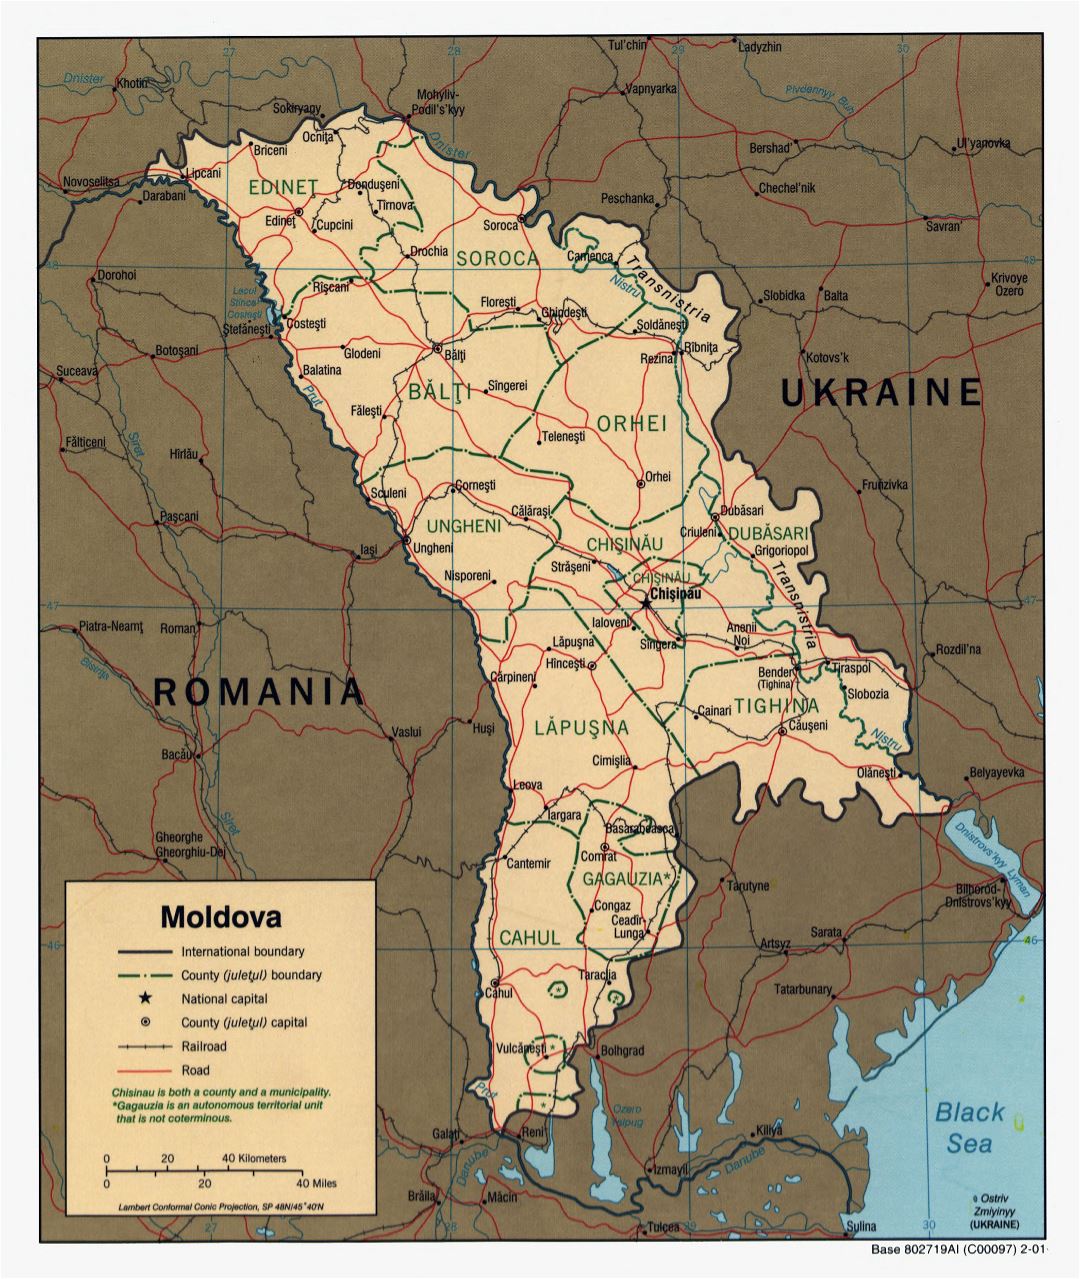 Крупномасштабная политическая и административная карта Молдовы с дорогами, железными дорогами и крупными городами - 2001